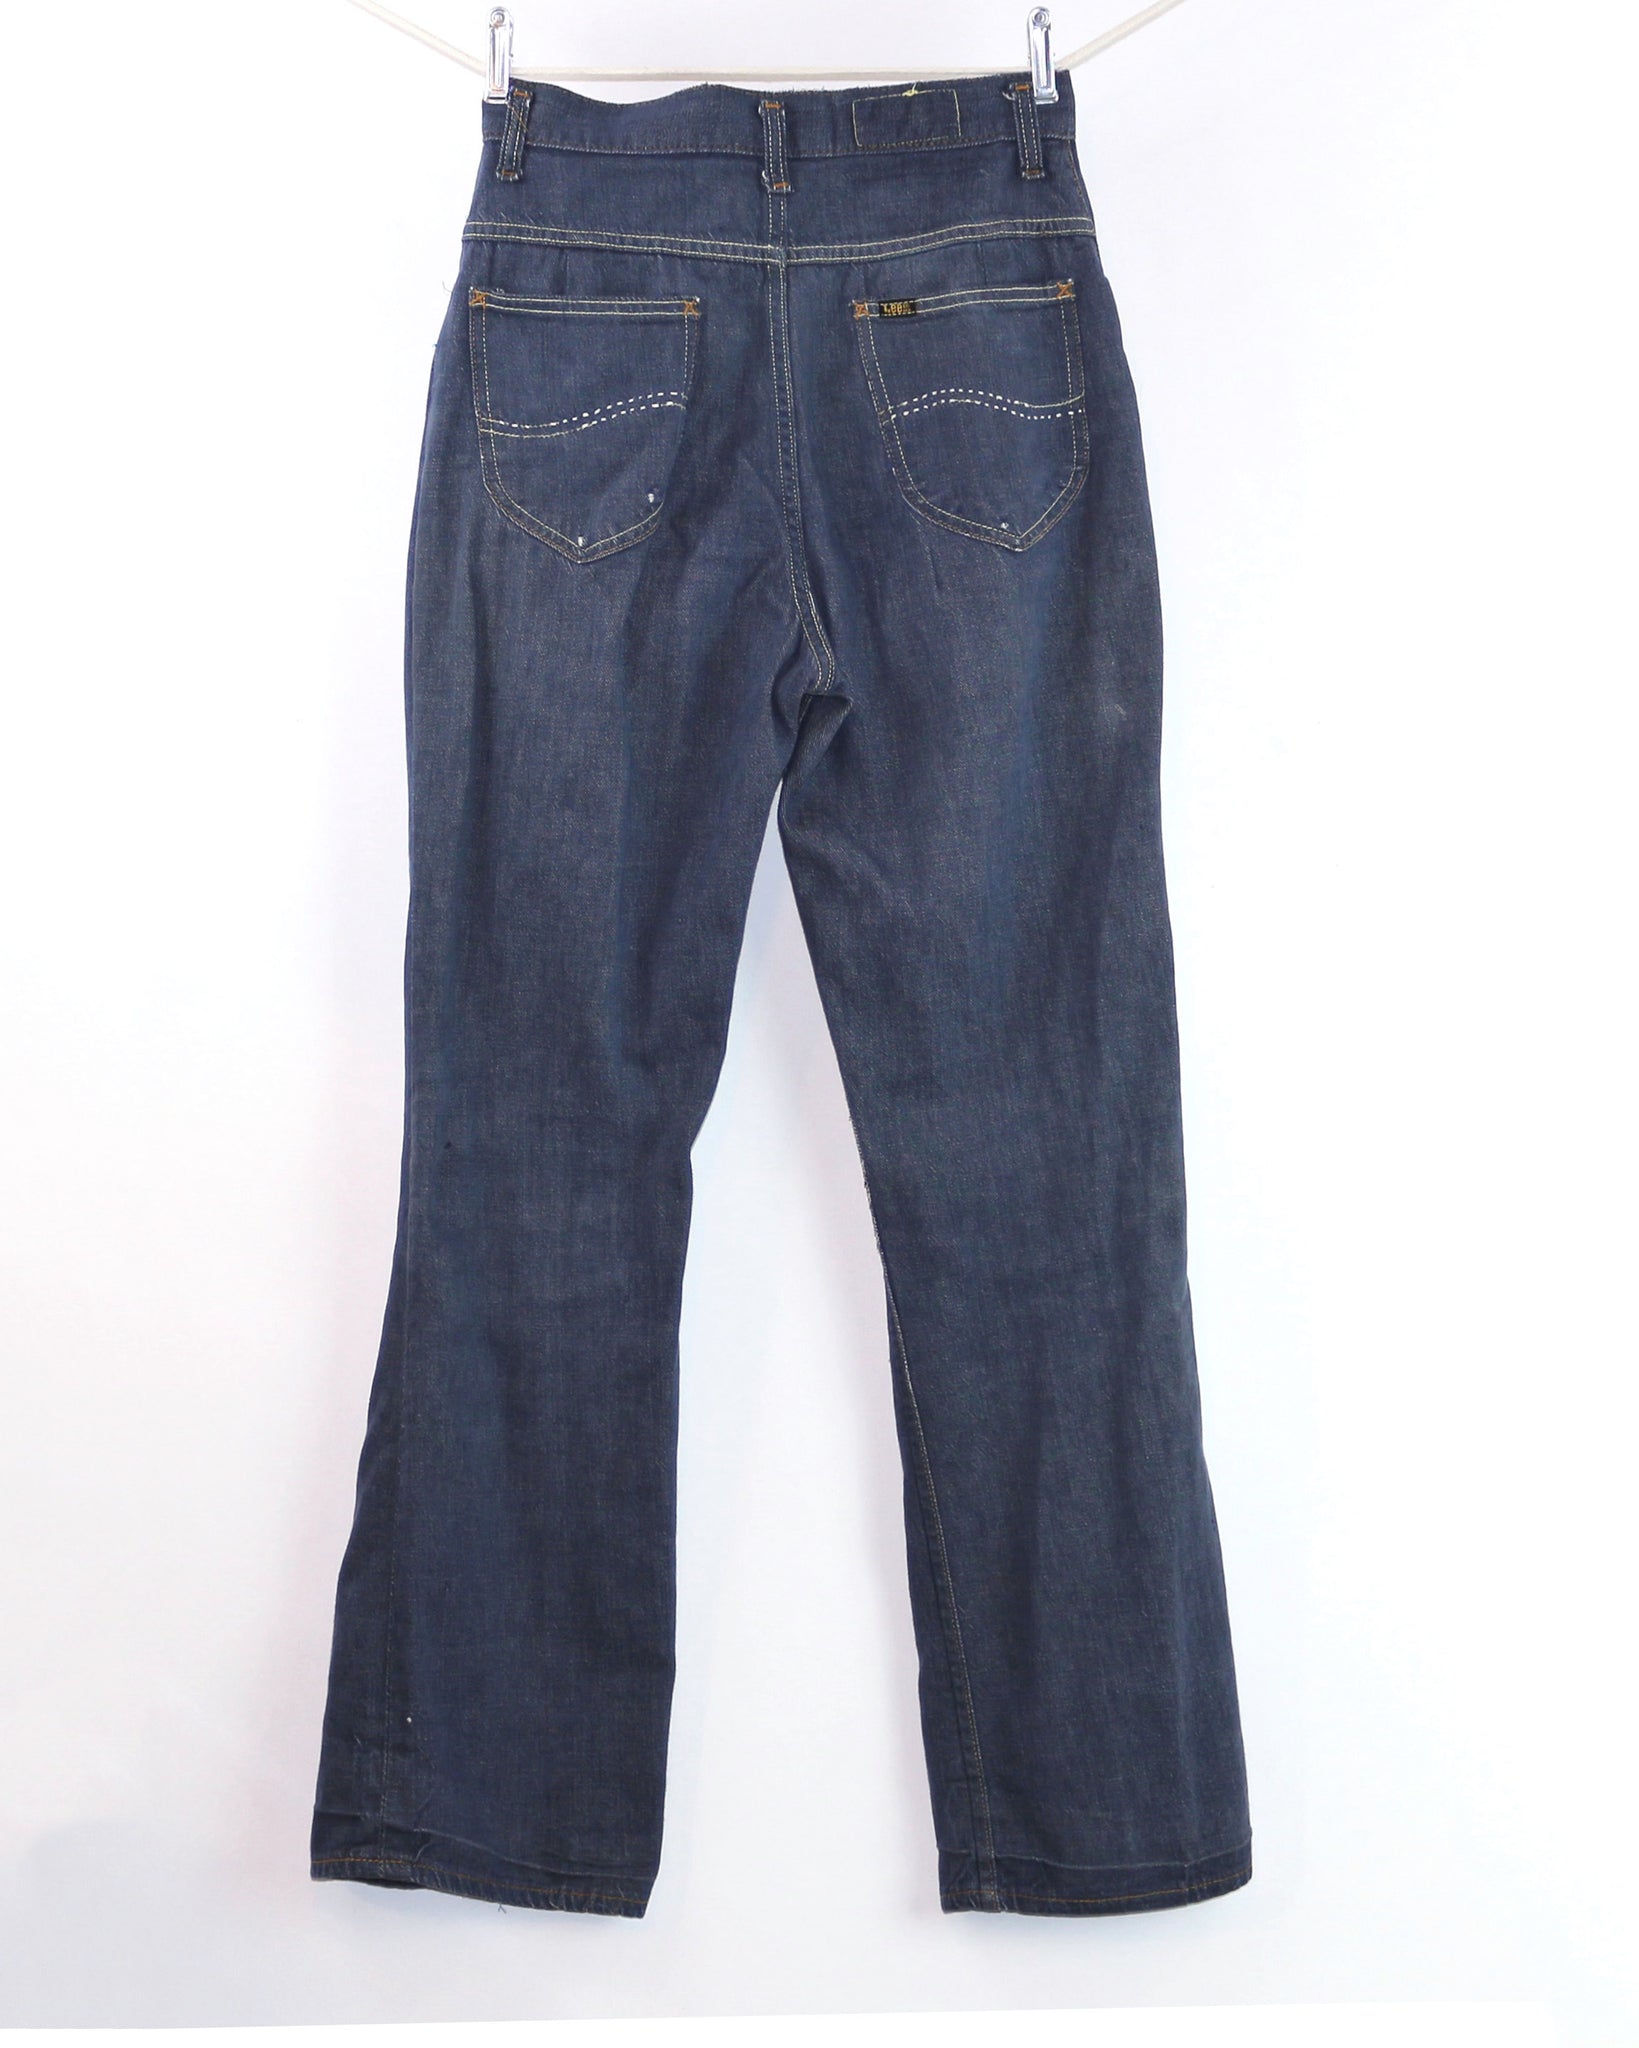 Vintage Lady Lee RIDERS Jeans, Waist 28 – kabanplus